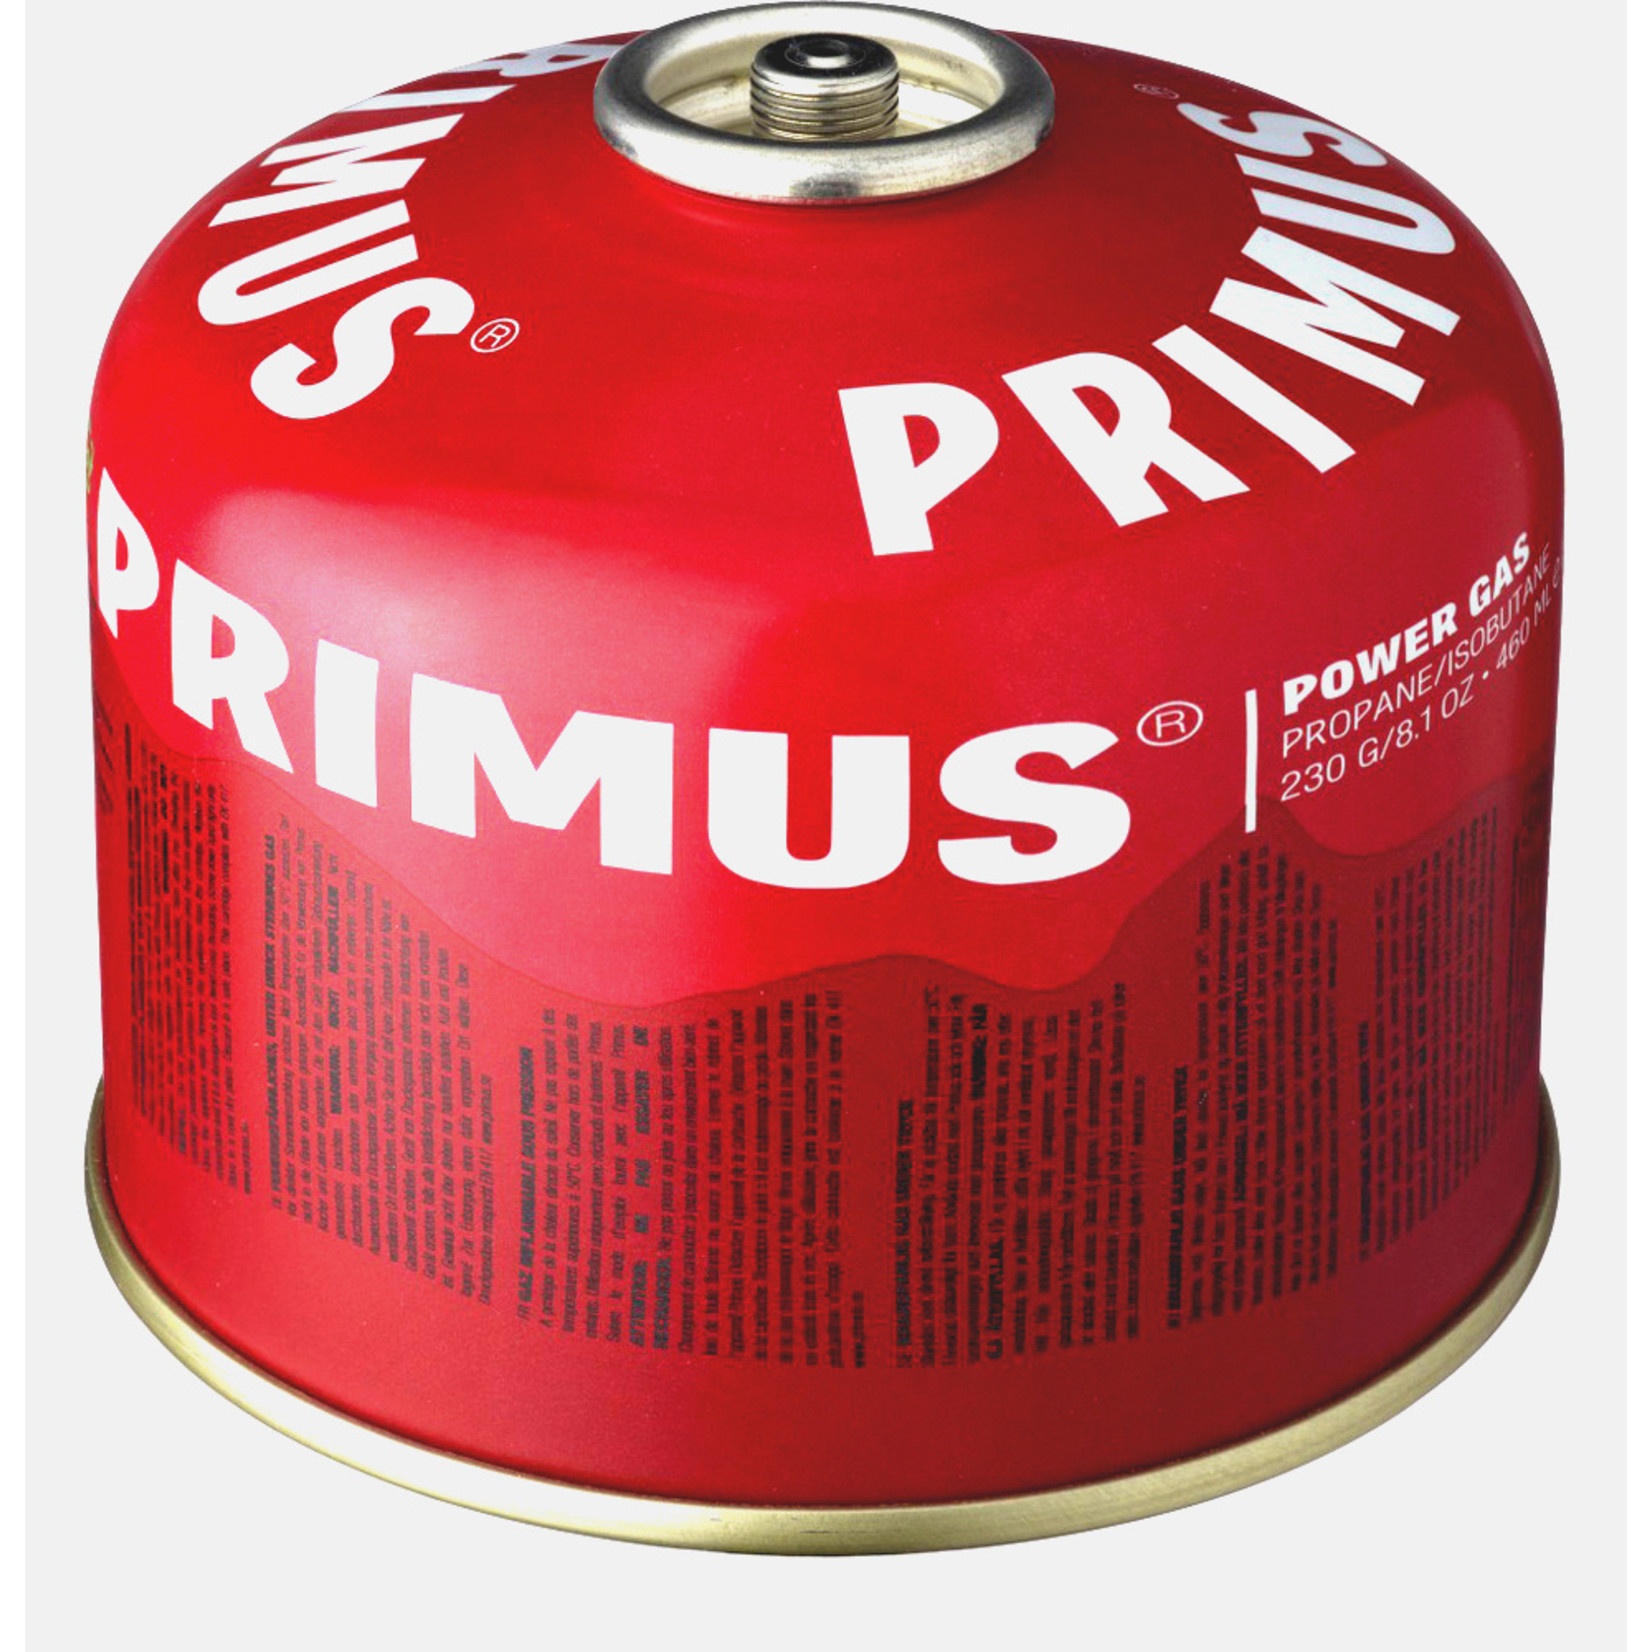 Primus Primus PowerGas cartridge 230 gram, Primus LP gasmengsel